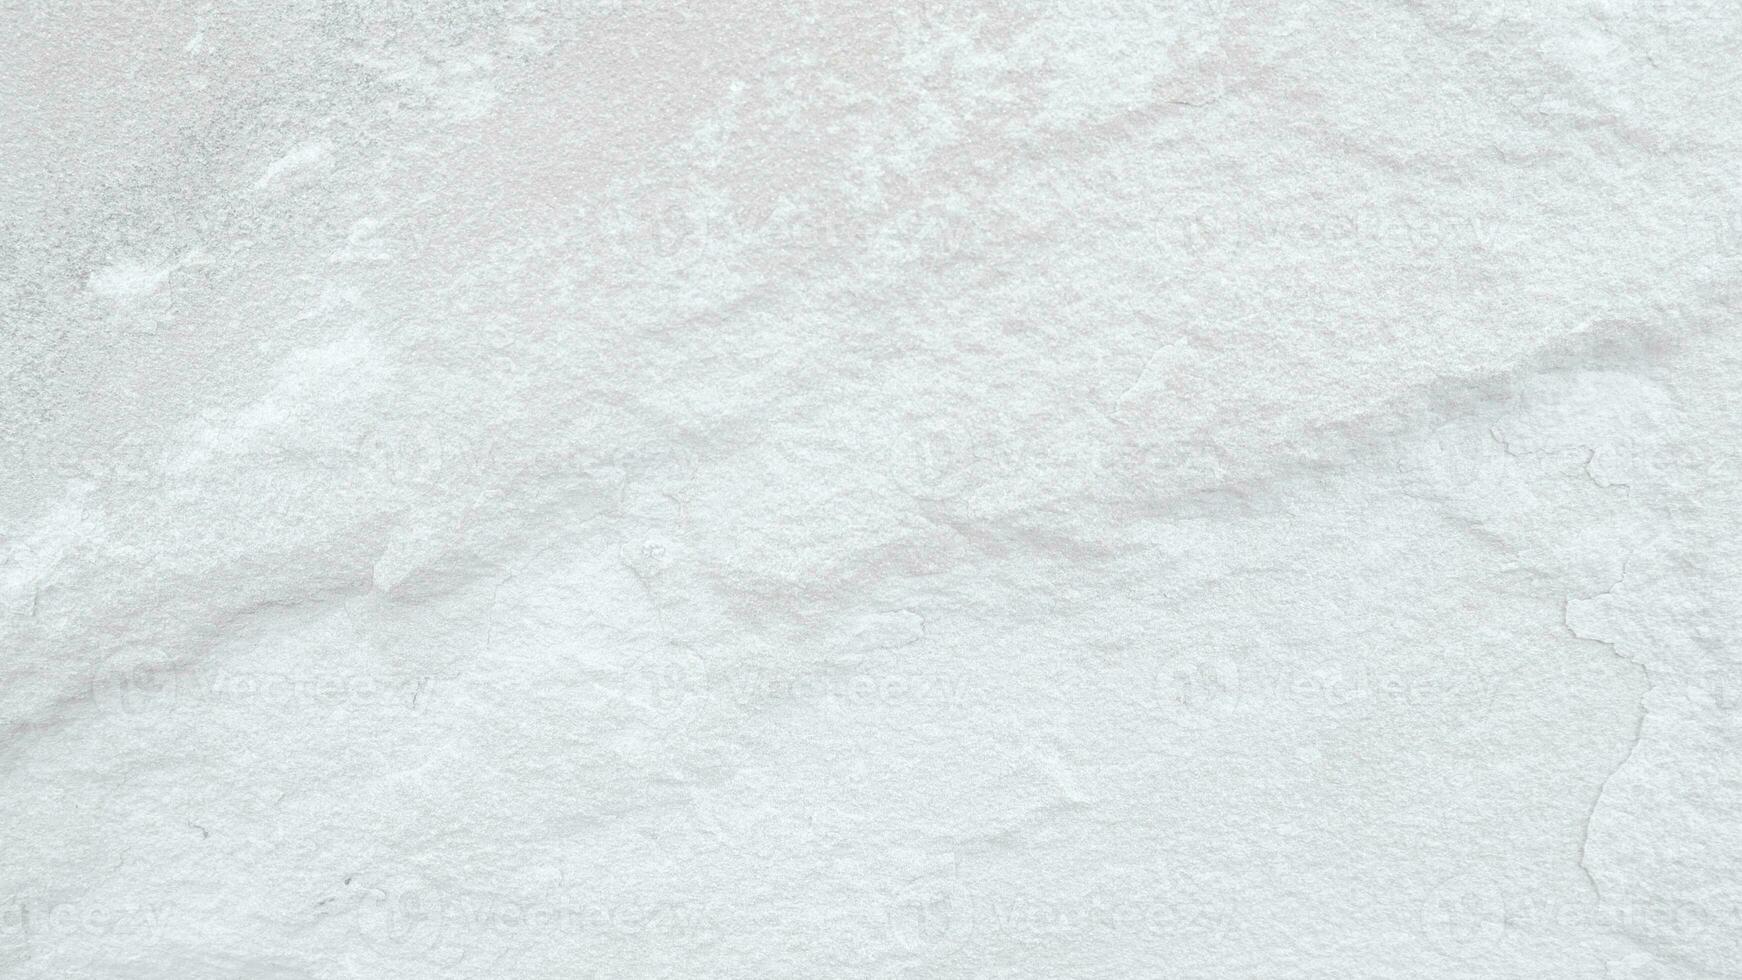 Superficie de la textura de piedra blanca tono blanco grisáceo áspero use  esto para papel tapiz o imagen de fondo hay un espacio en blanco para  textx9